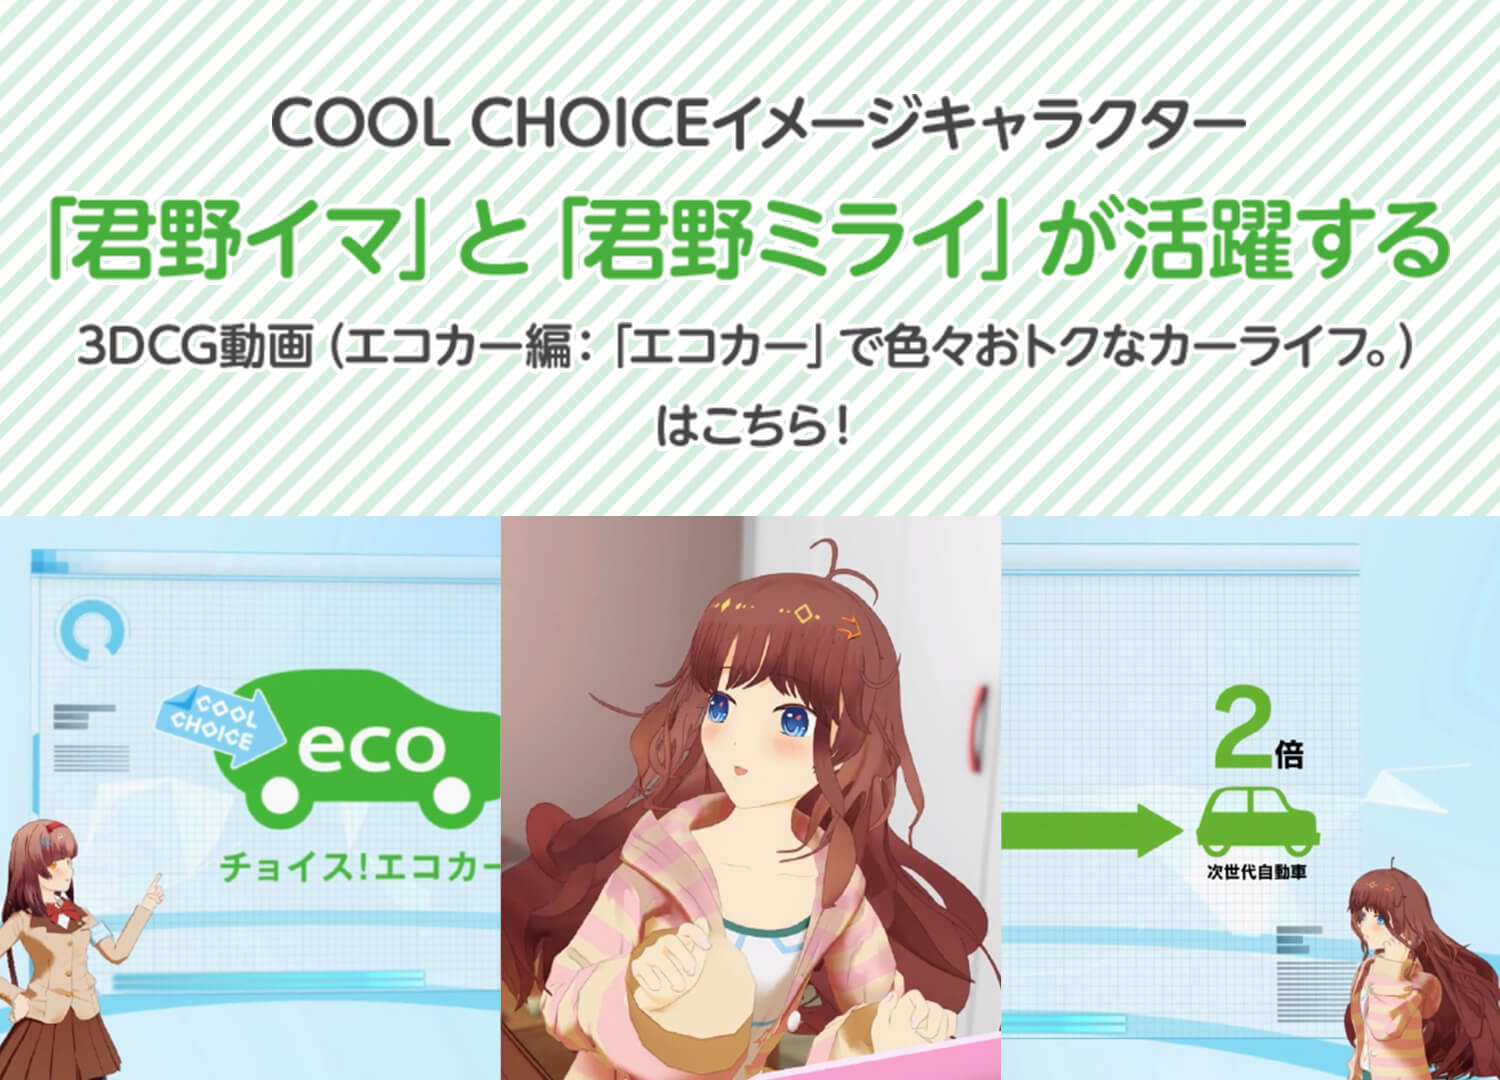 COOL CHOICEイメージキャラクター 「君野イマ」と「君野ミライ」が活躍する 3DCG動画（エコカー編：「エコカー」で色々おトクなカーライフ。）はこちら！